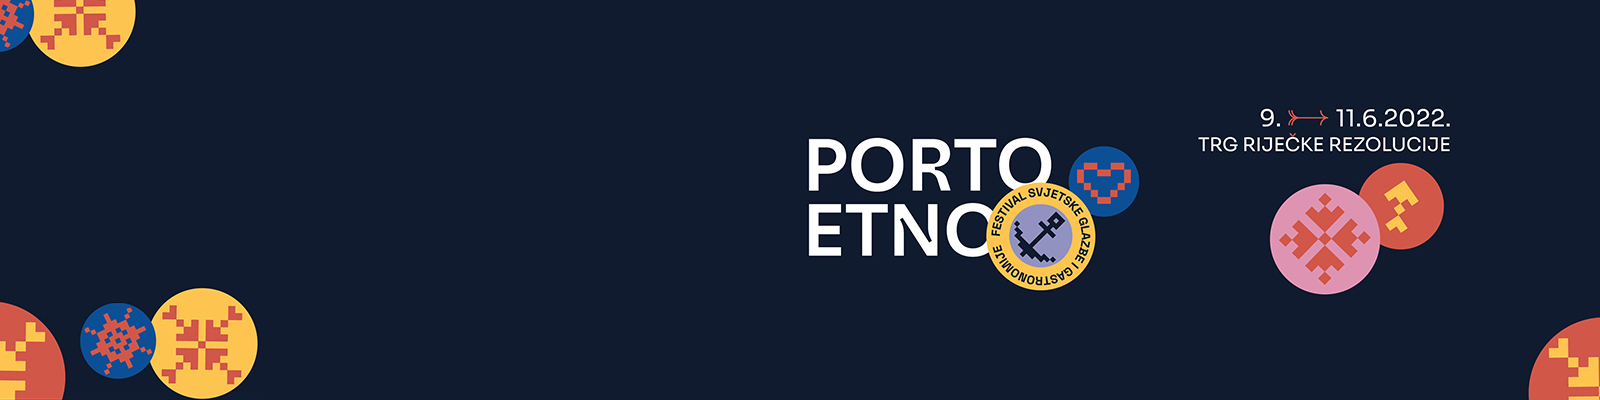 Porto Etno